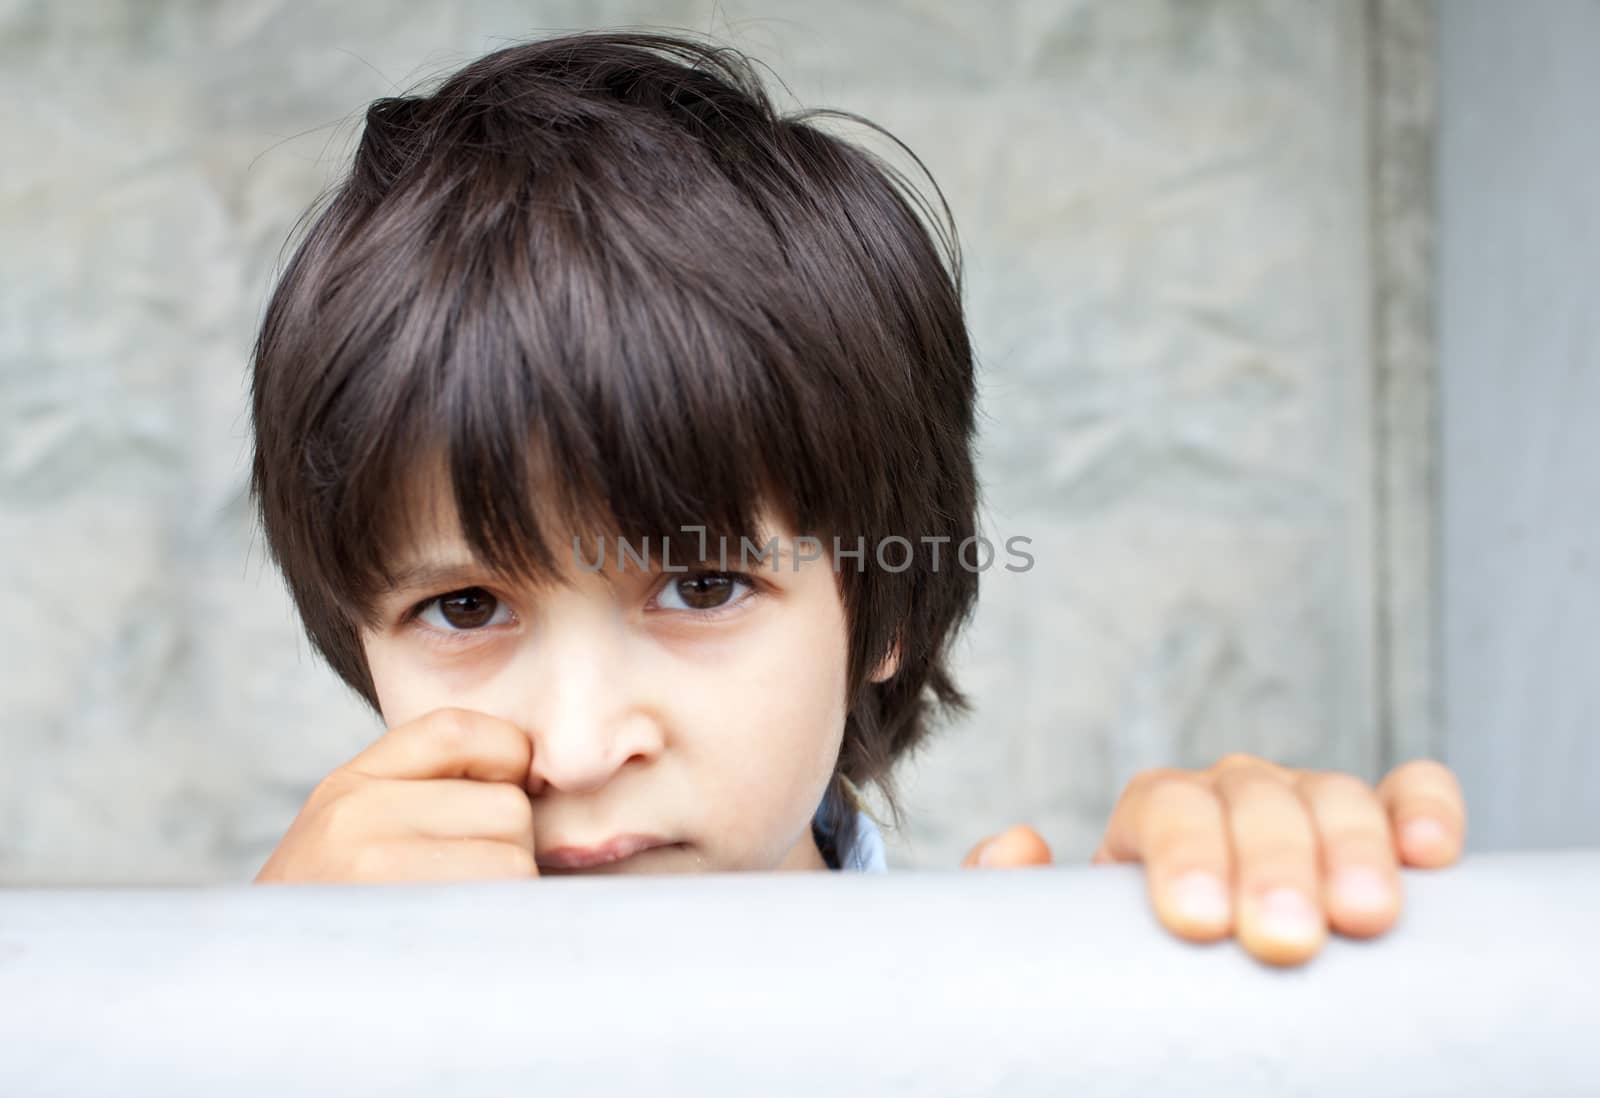 little boy, close-up portrait